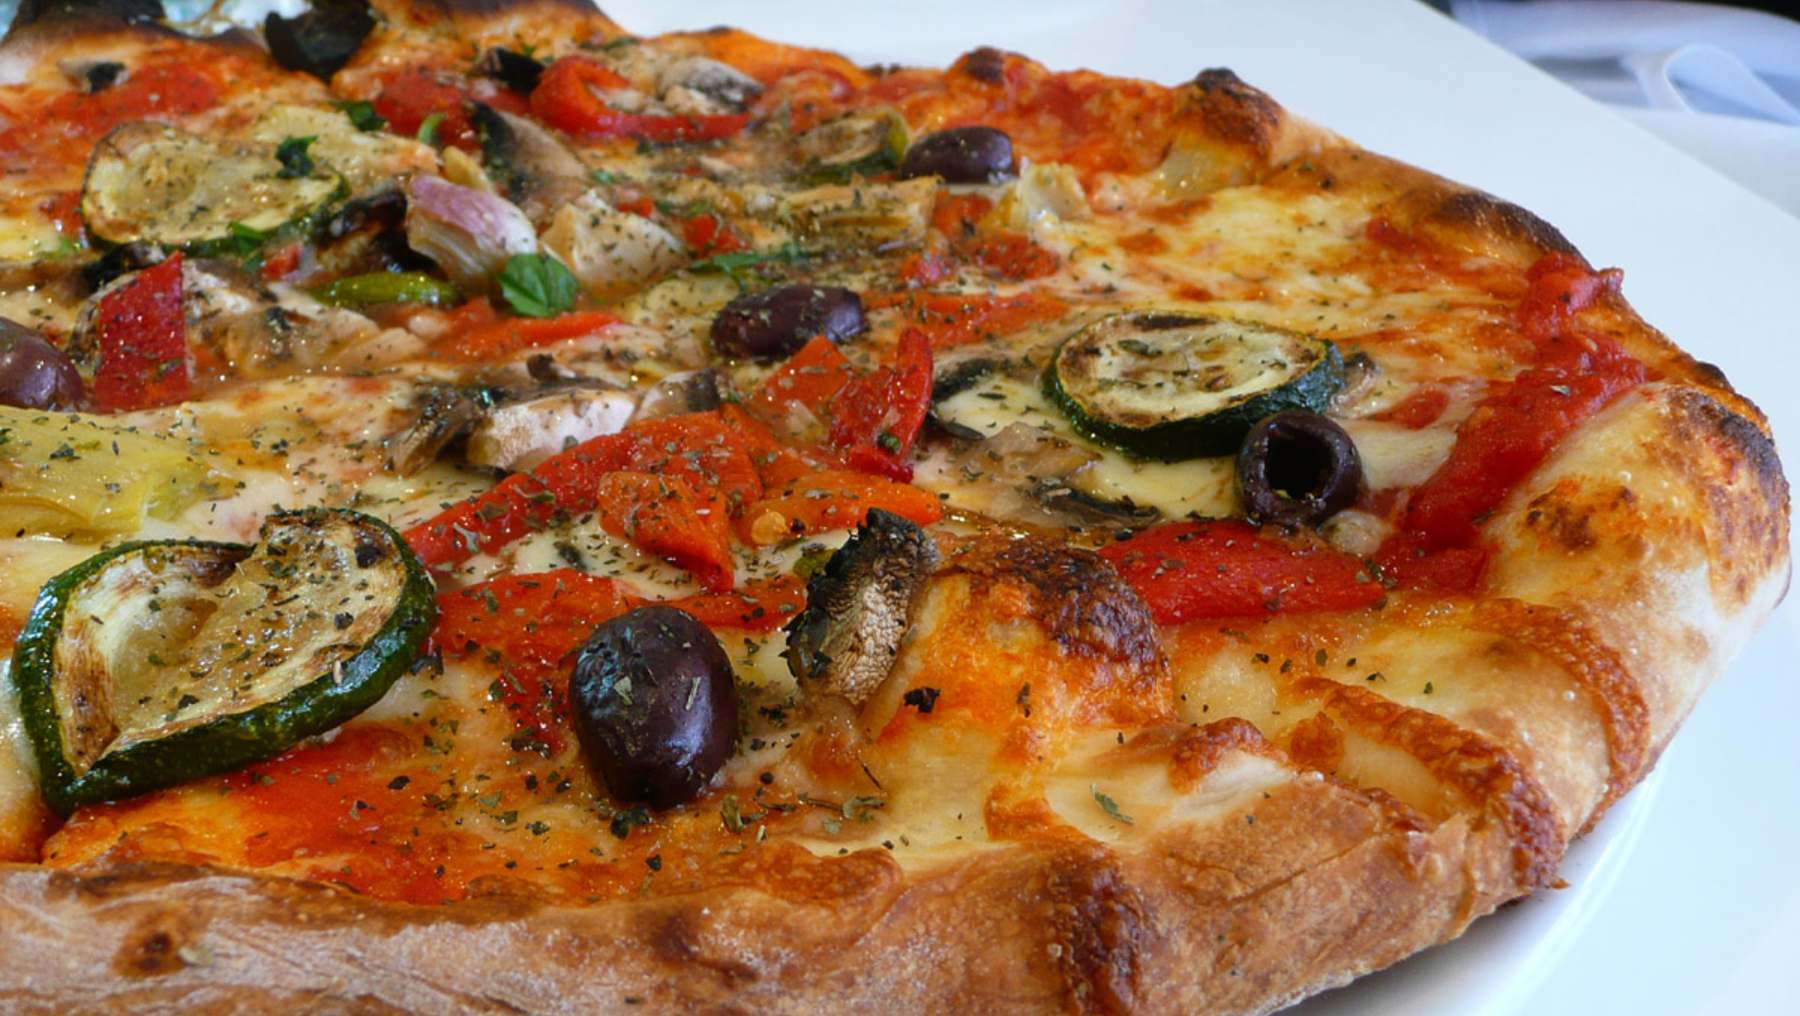 Pizza con boniato, berenjenas y espárragos: receta vegetariana